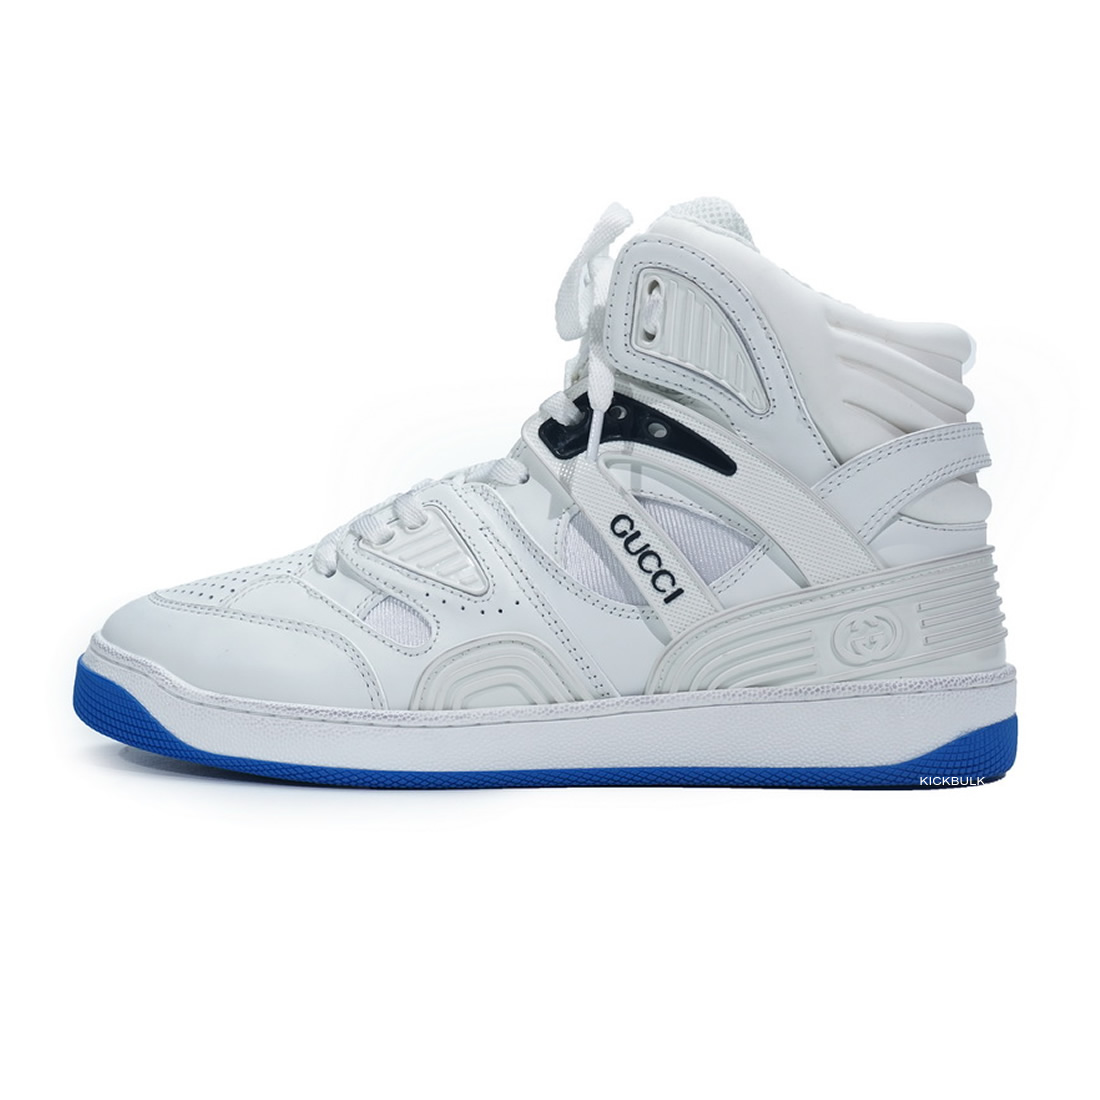 Gucci Basketball Shoes White Blue 6613032sh901072 1 - kickbulk.co